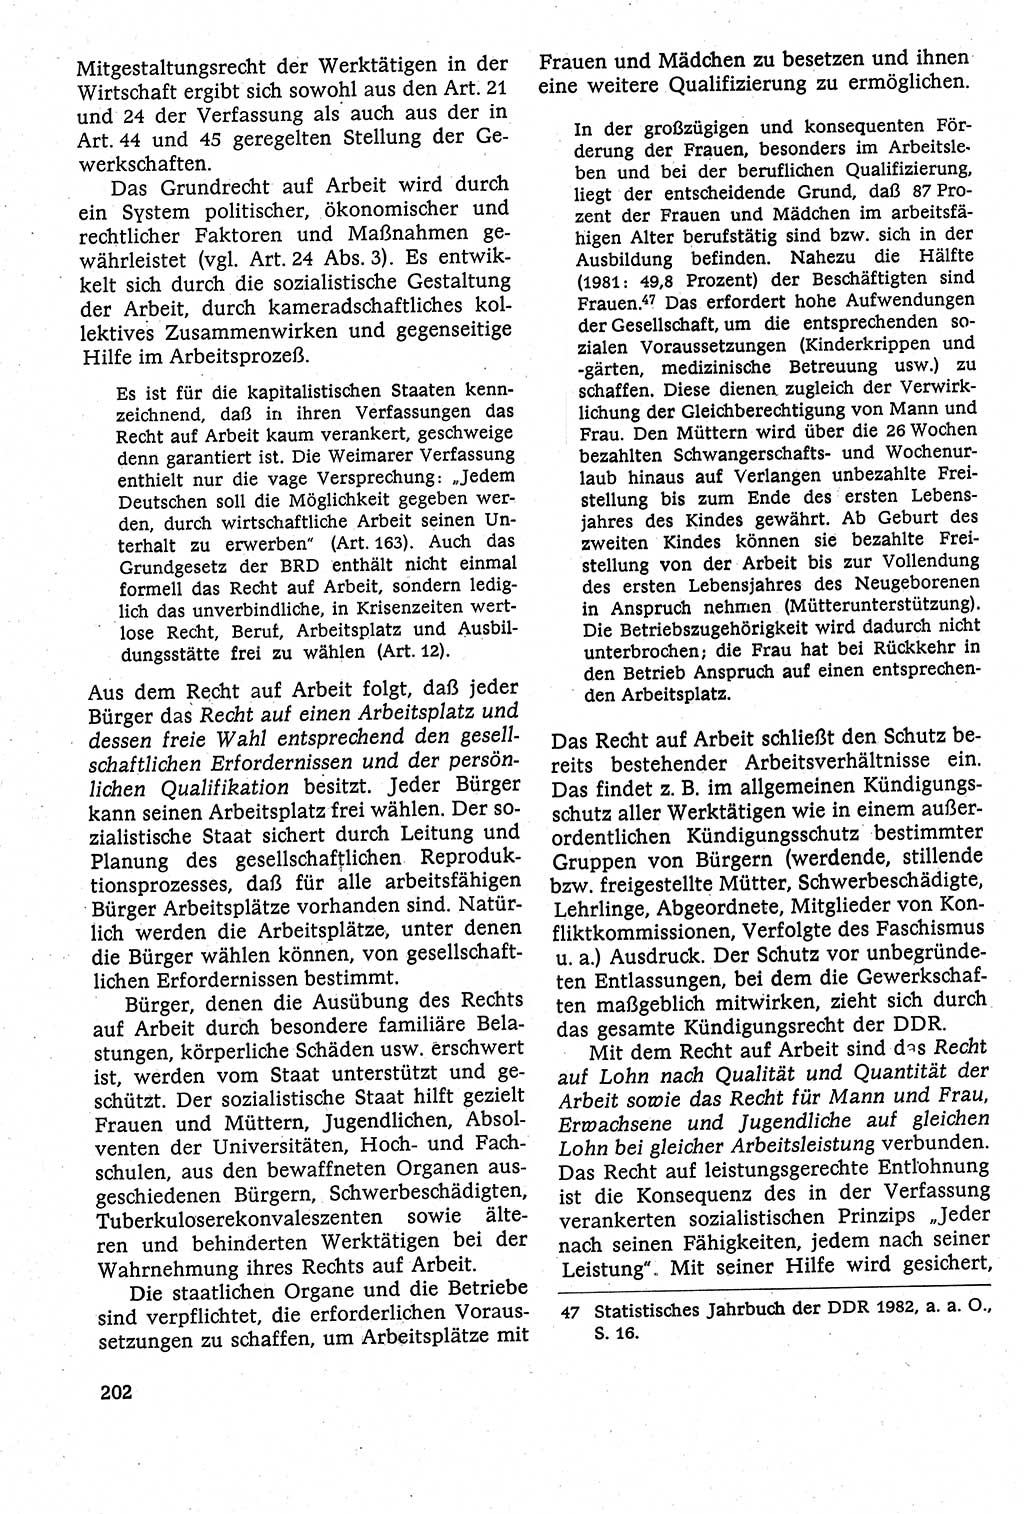 Staatsrecht der DDR [Deutsche Demokratische Republik (DDR)], Lehrbuch 1984, Seite 202 (St.-R. DDR Lb. 1984, S. 202)